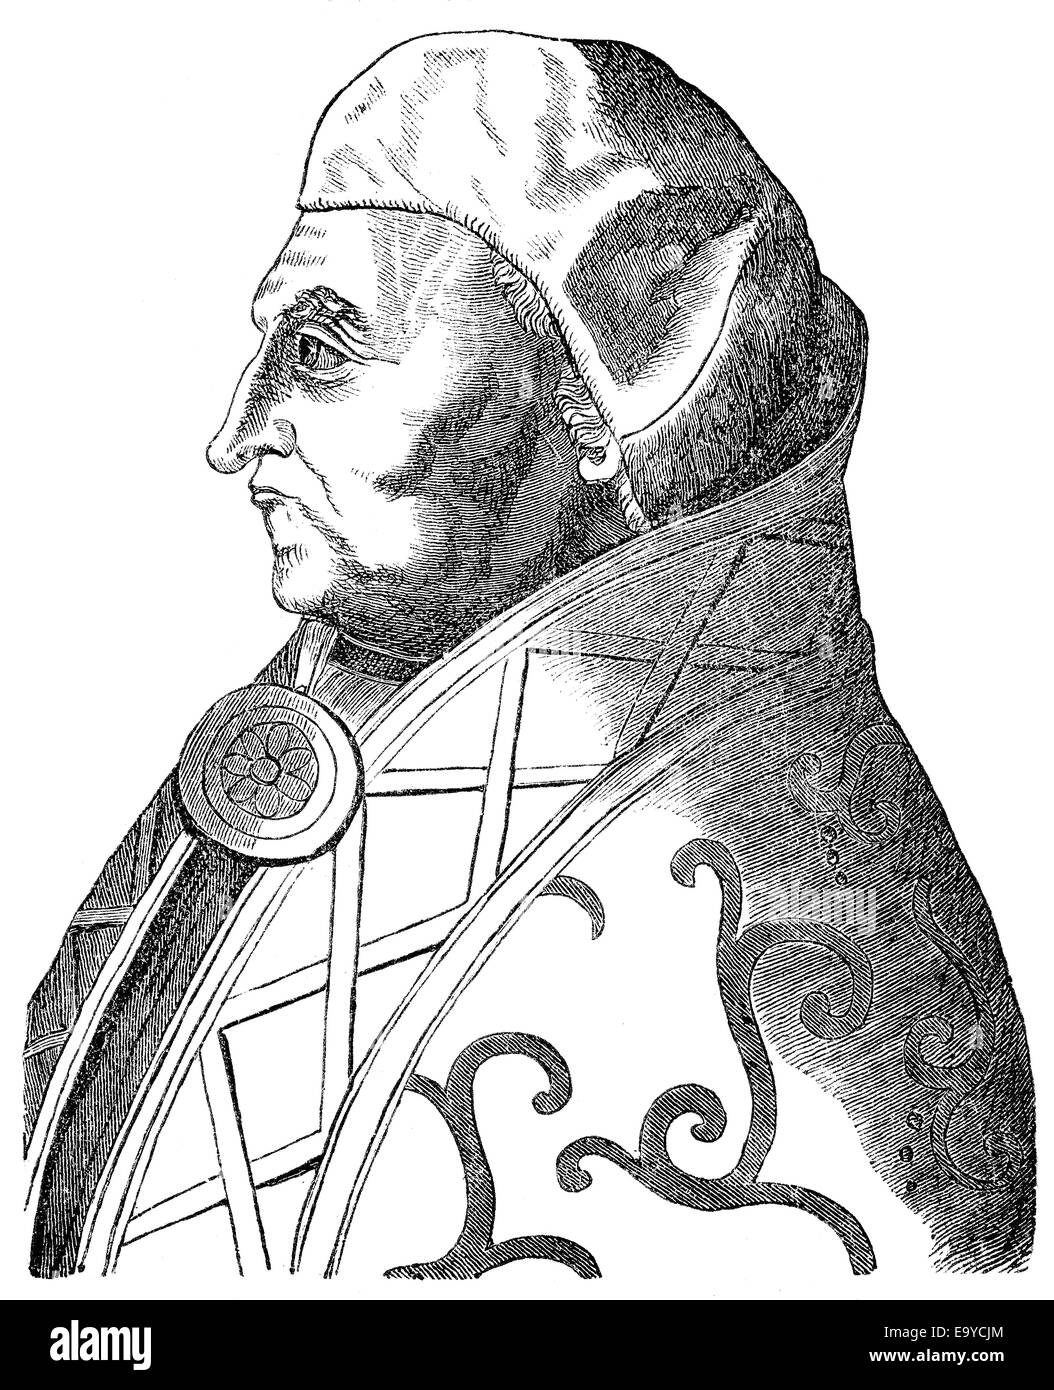 Papa Pio II, nato Enea Silvio Piccolomini Bartolomeo , 1405-1464, Papa dal 1458 al 1464, Papst Pio II., ursprünglich Enea Sil Foto Stock